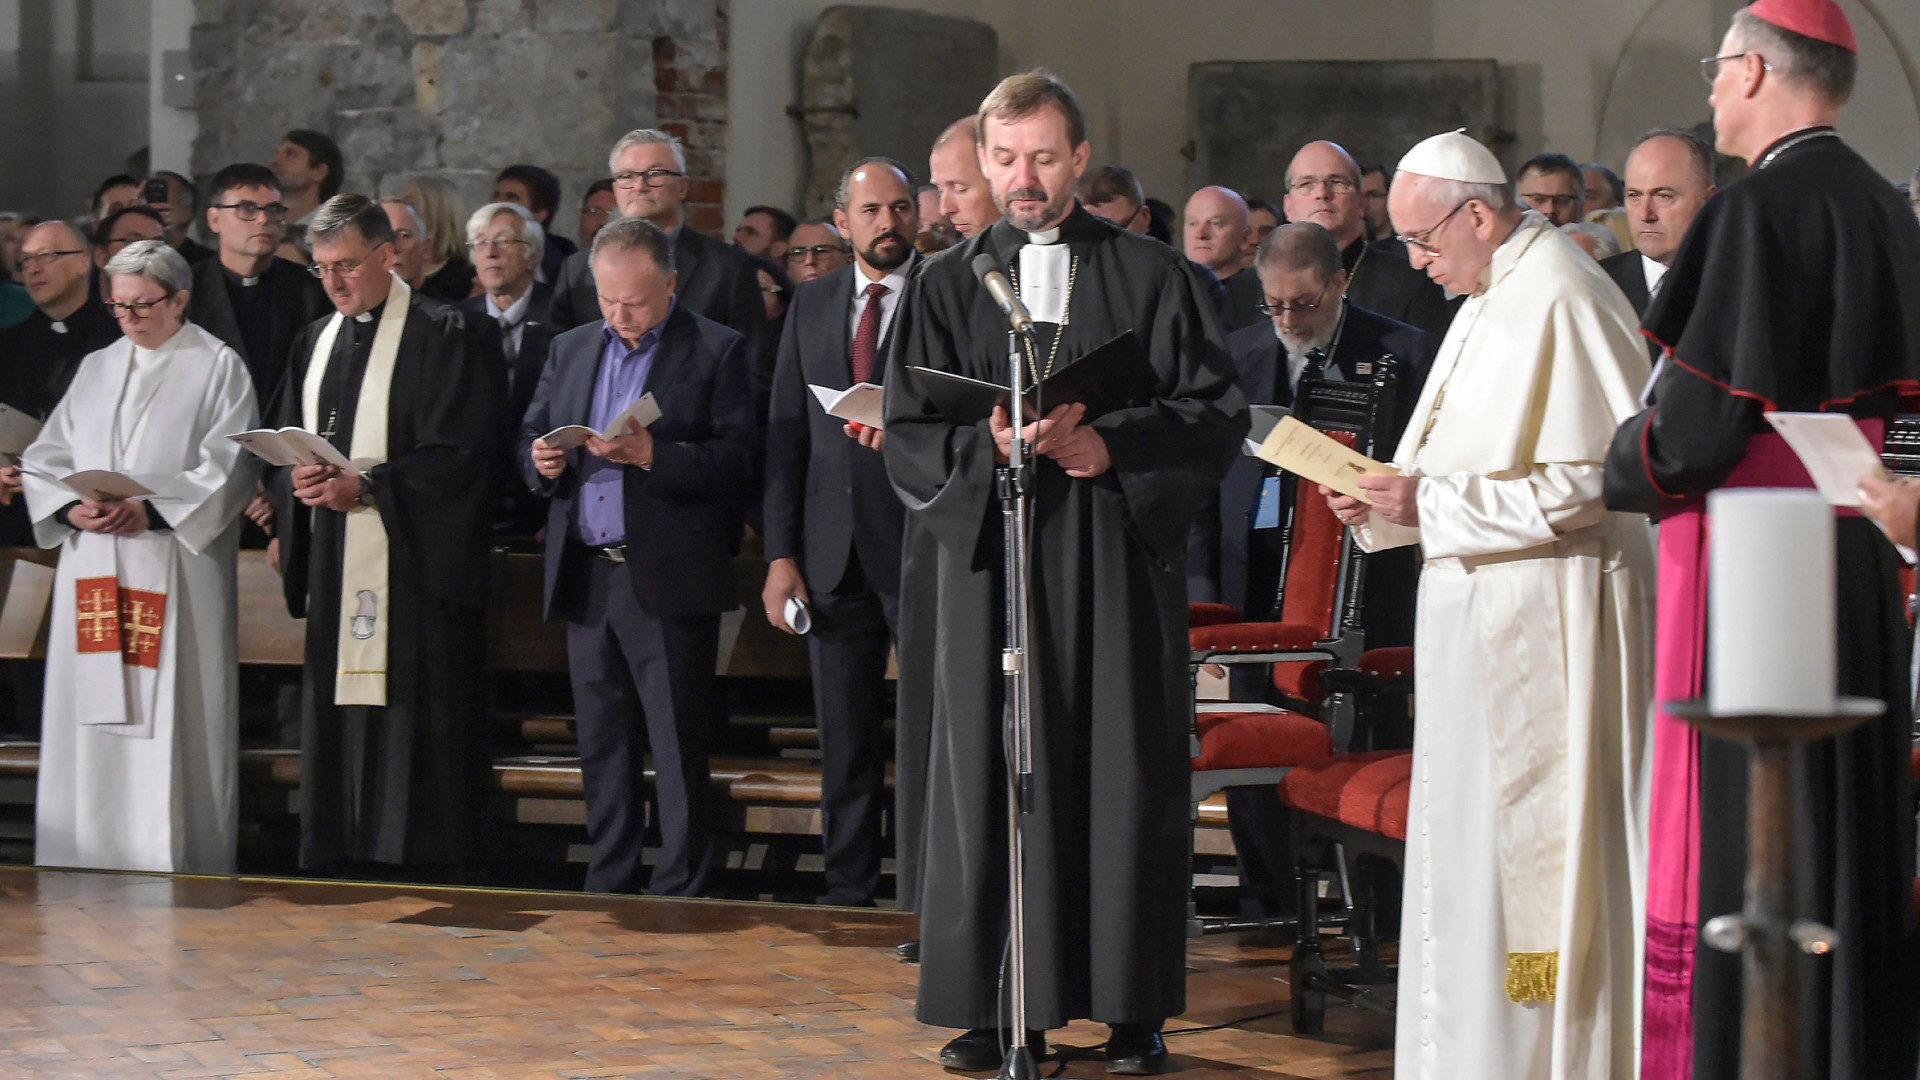 Janis Vanags, evangelisch-lutherischen Kirche Lettlands, spricht während der ökumenischen Begegnung mit Papst Franziskus.